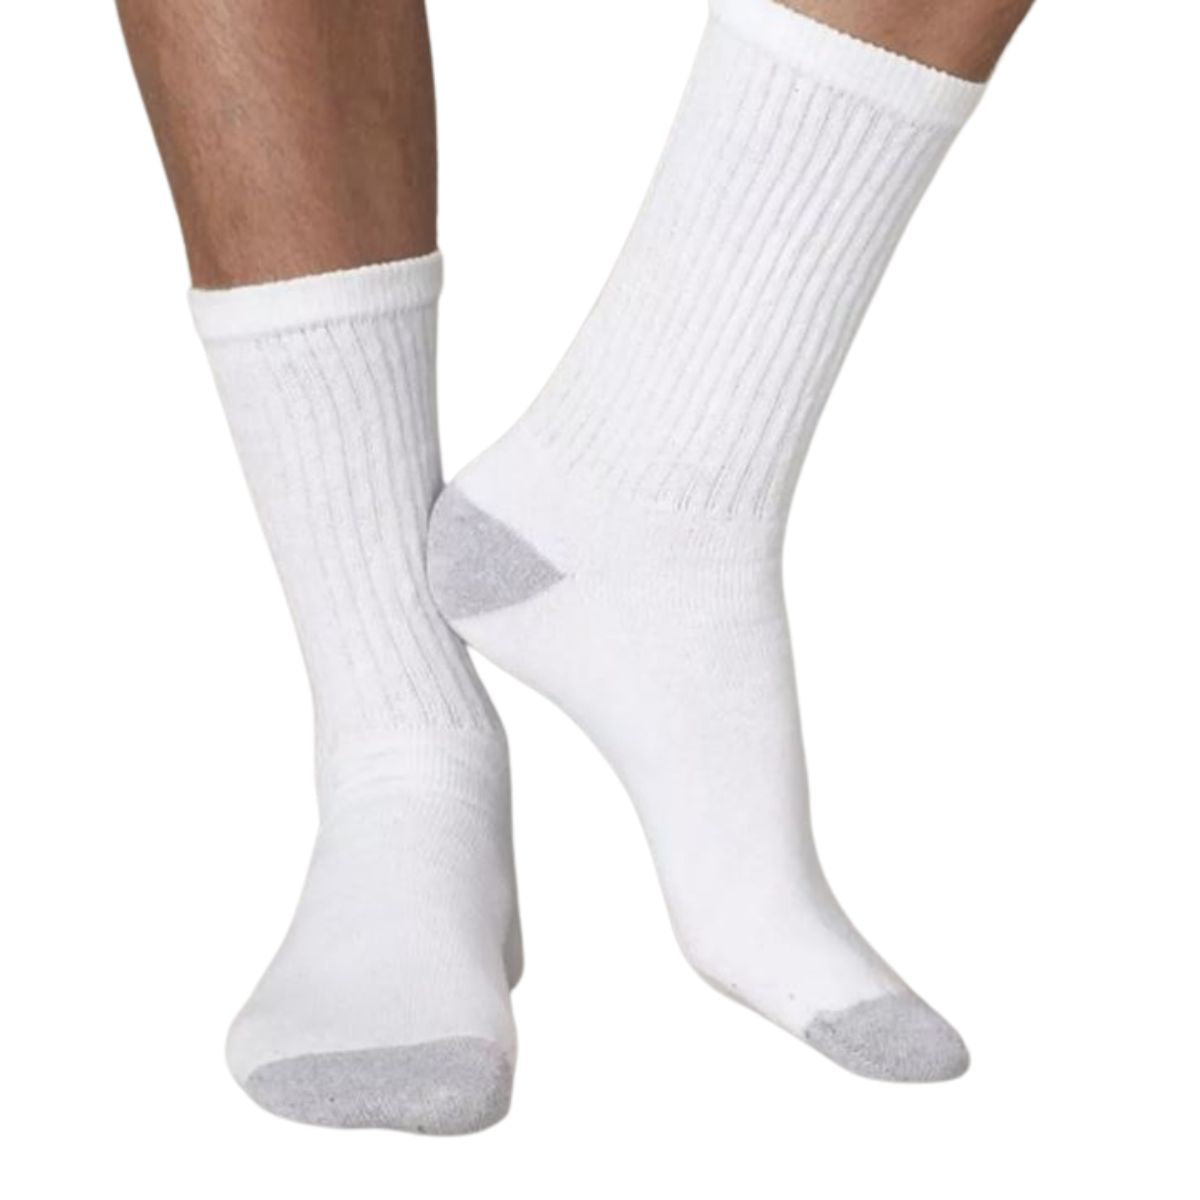 calcetas largas deportivas algodón (12 pares)